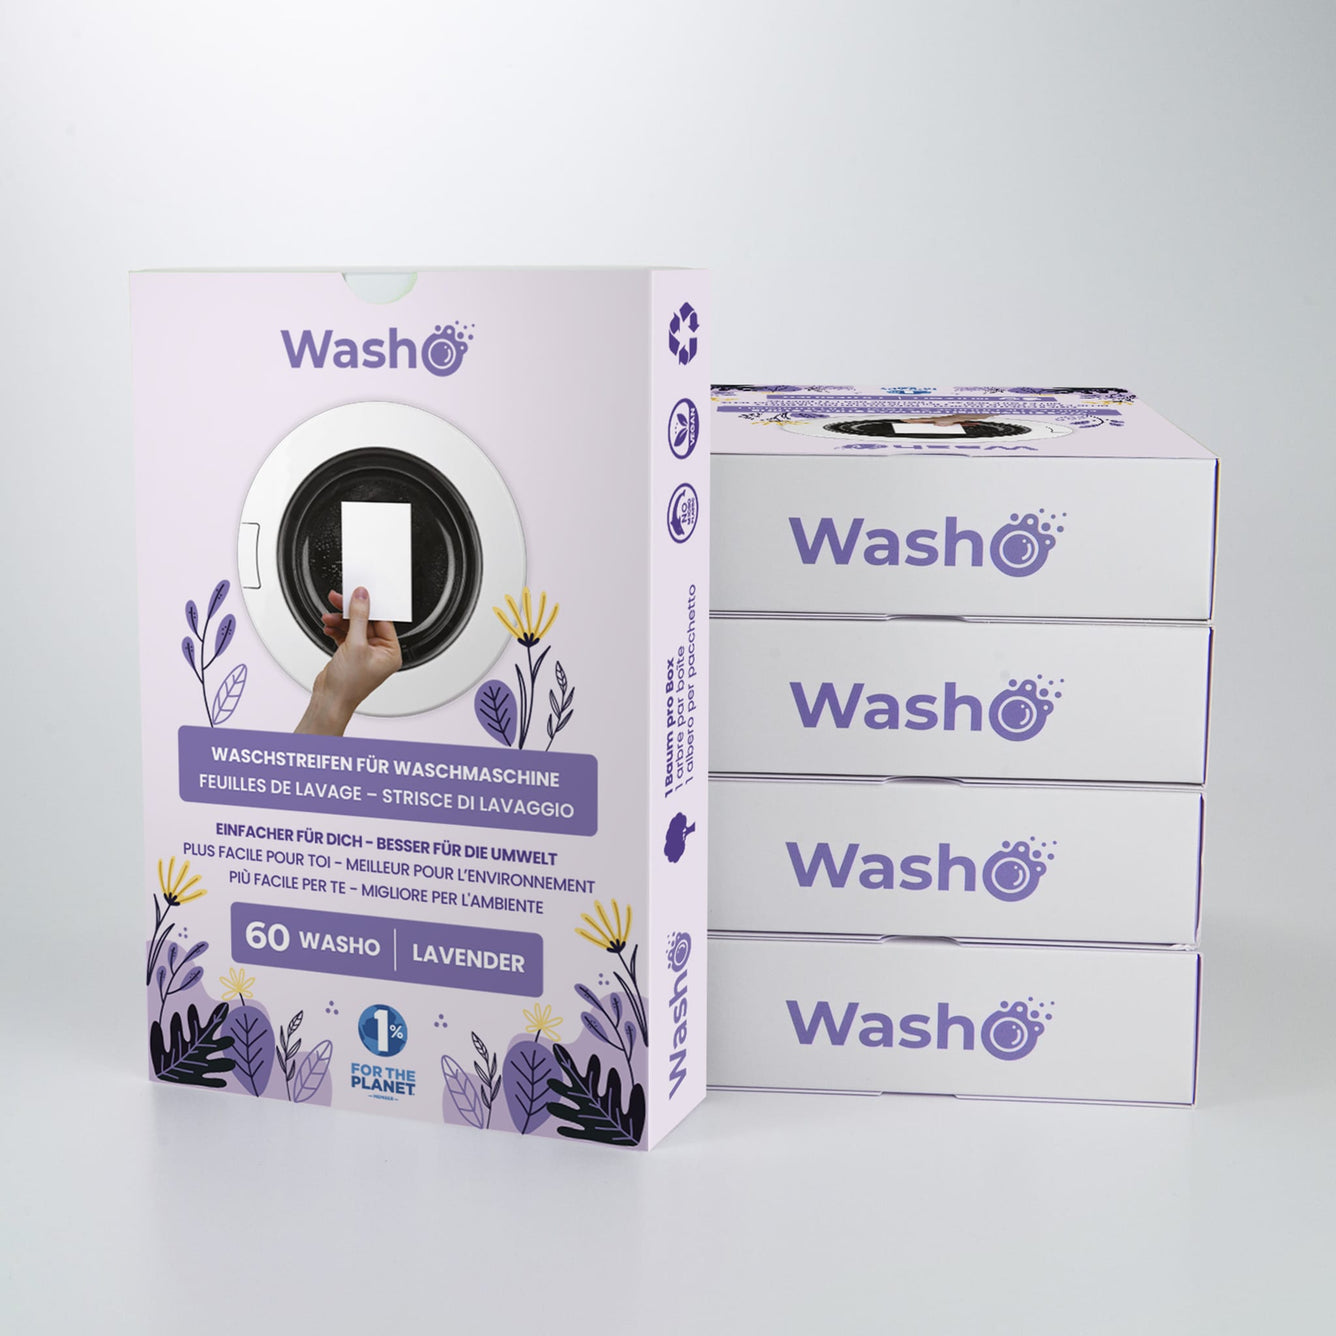 5 Boxen mit total 300 Washo-Waschstreifen Lavendel - washo.ch